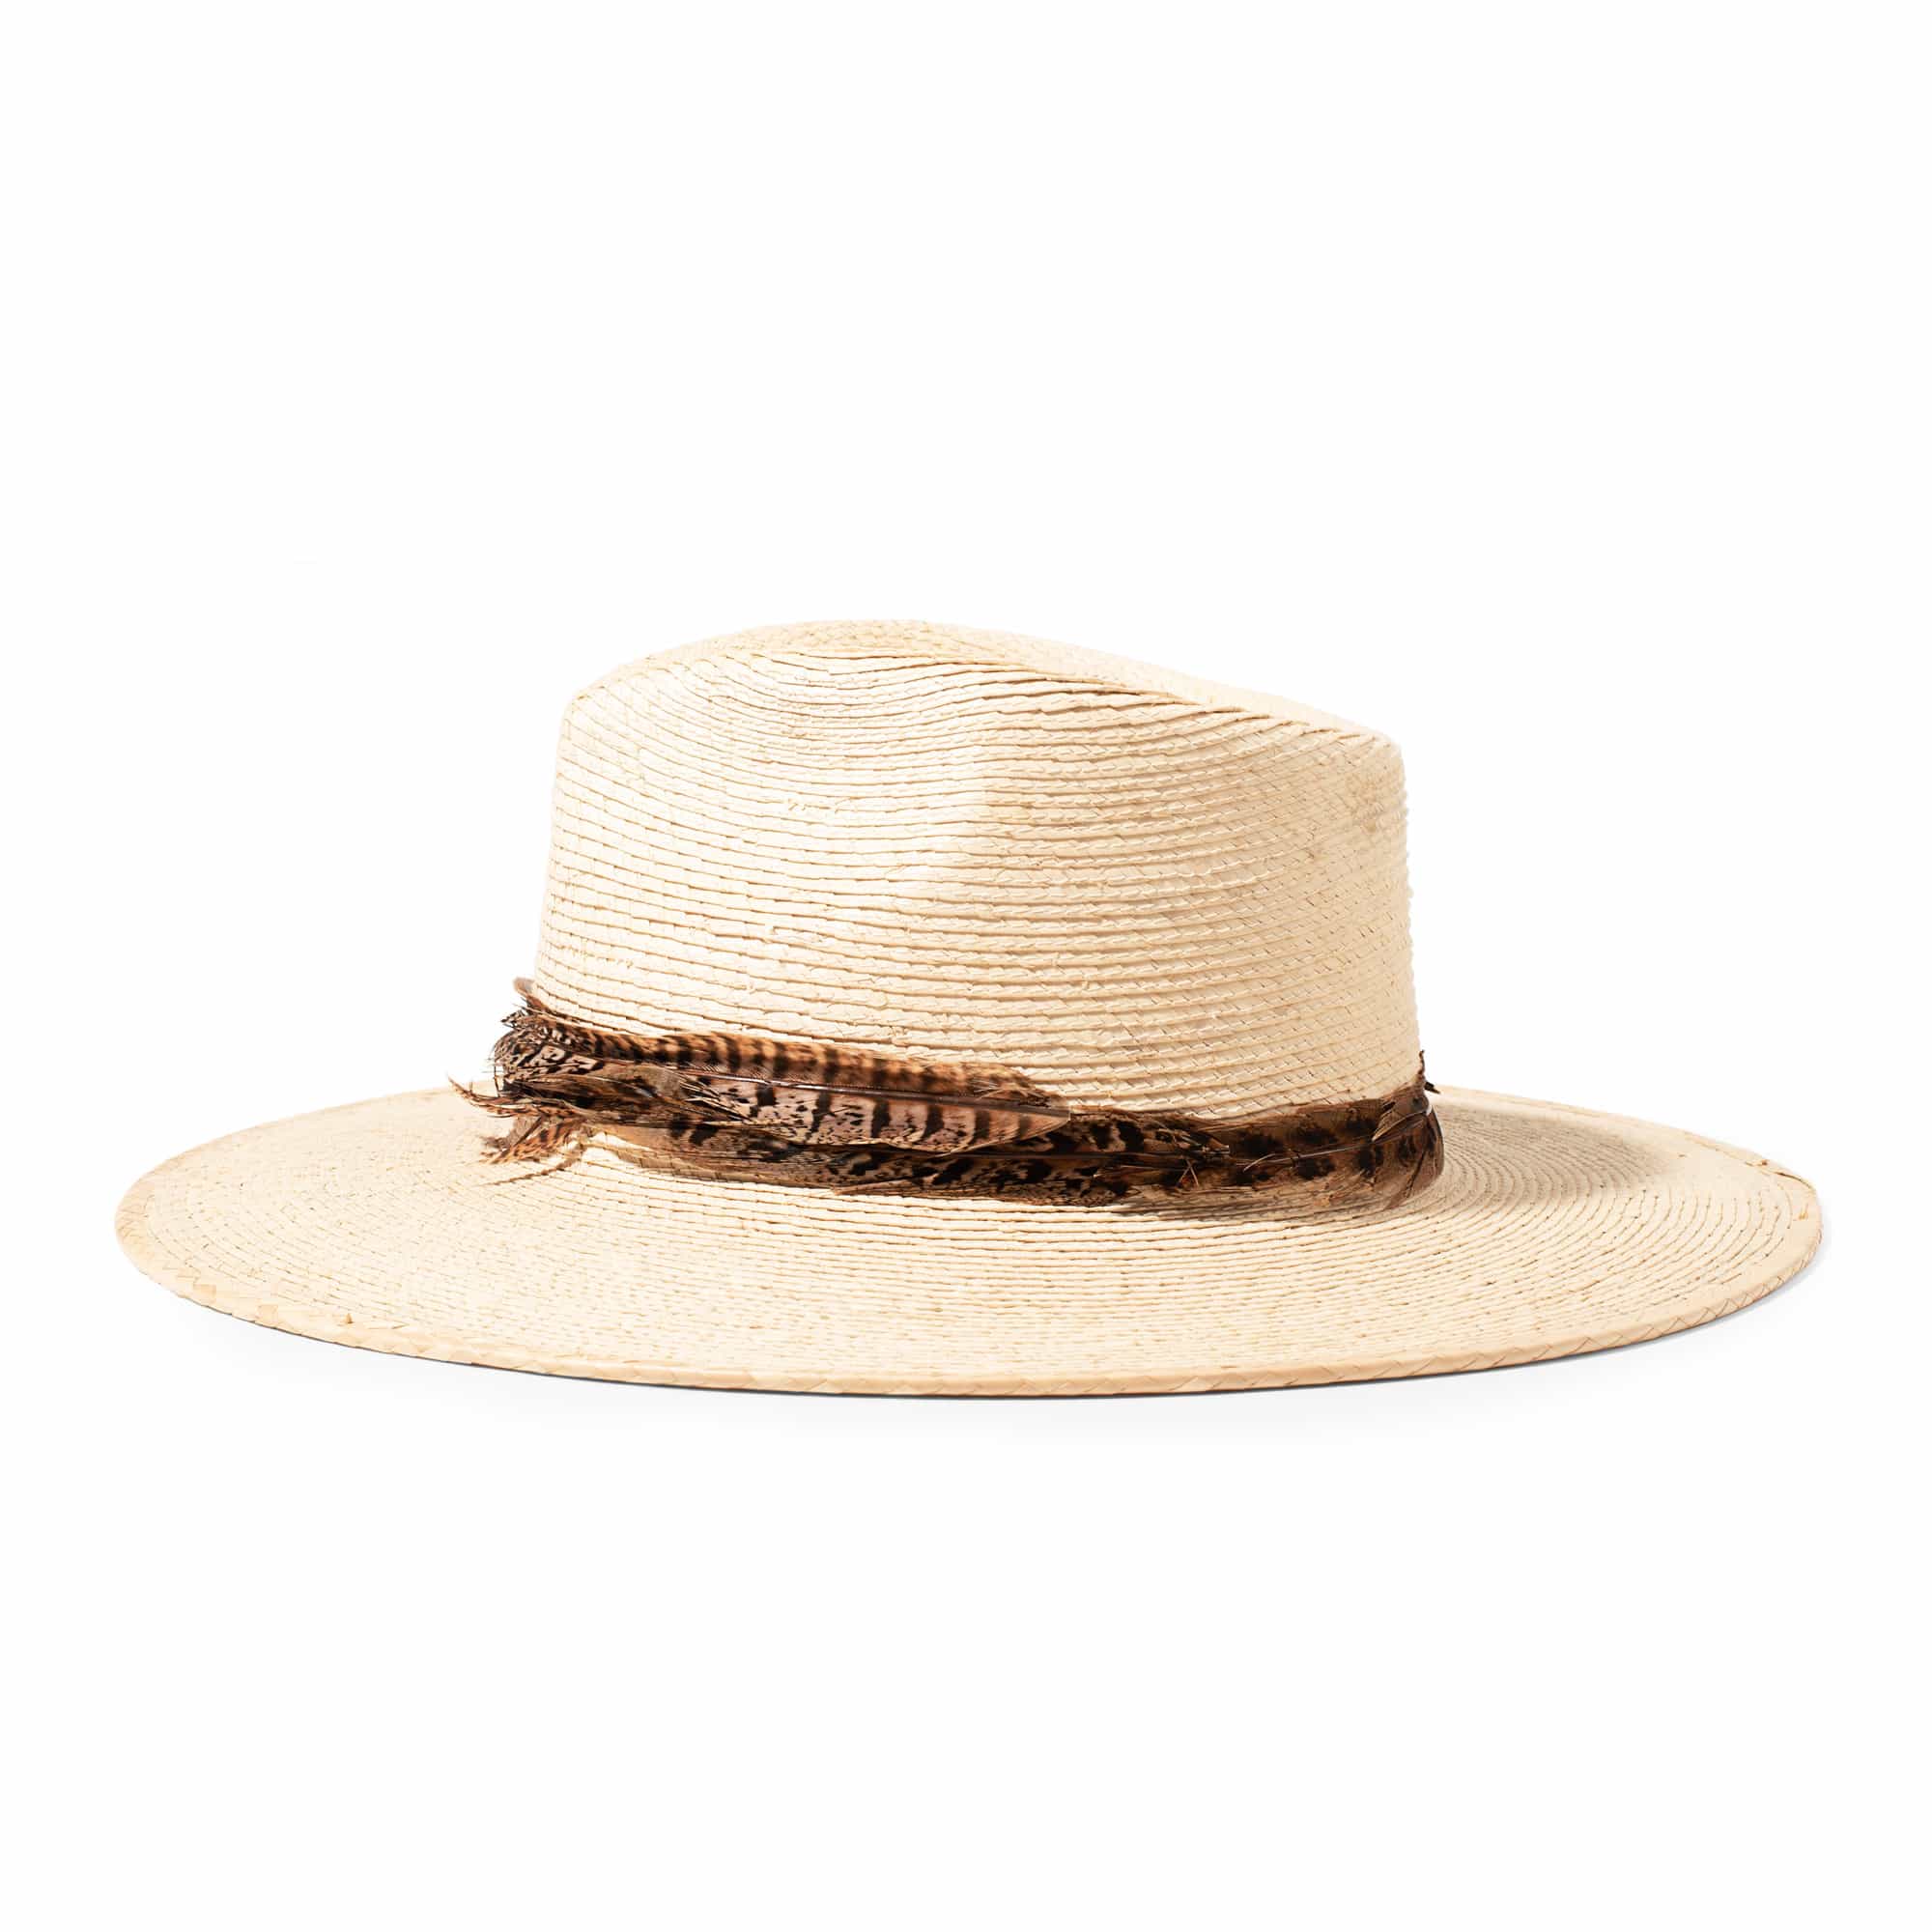 Sombrero Savana Hat - Natural lateral